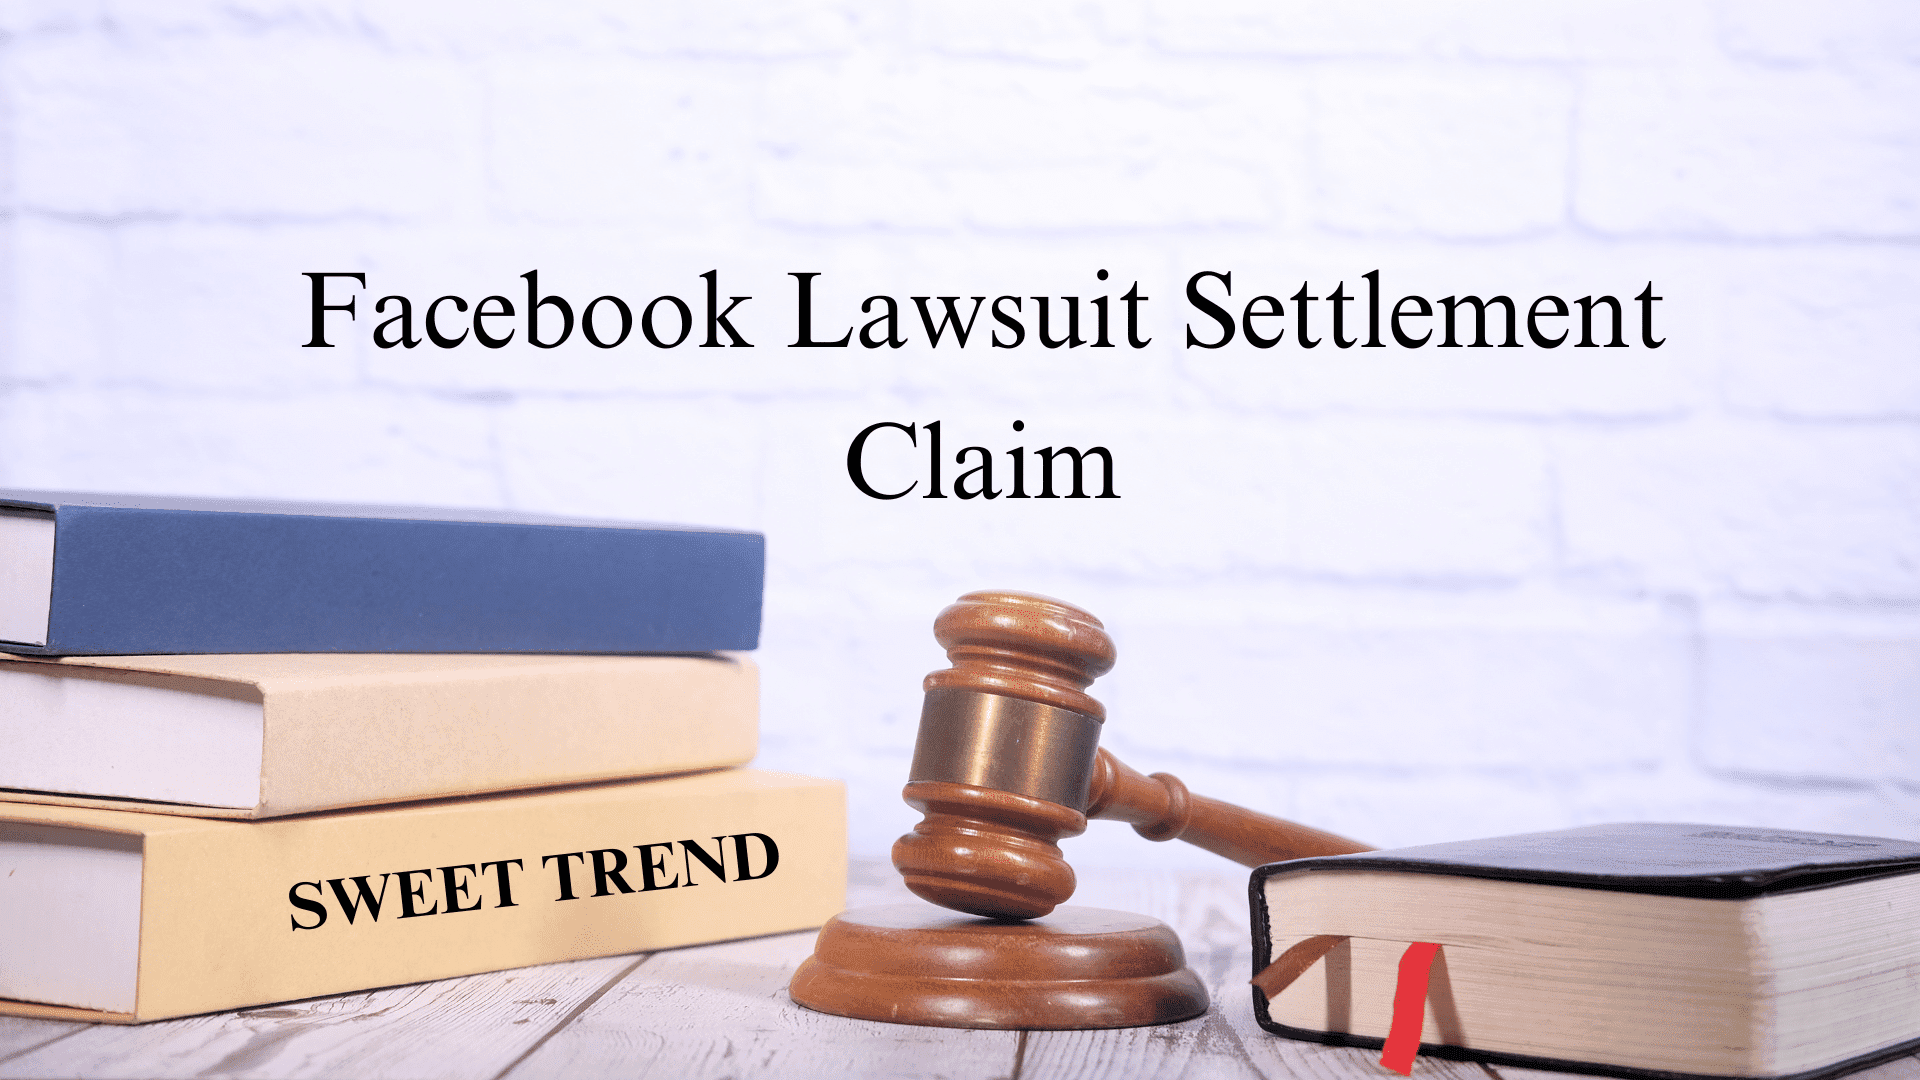 Facebook Lawsuit Settlement Claim